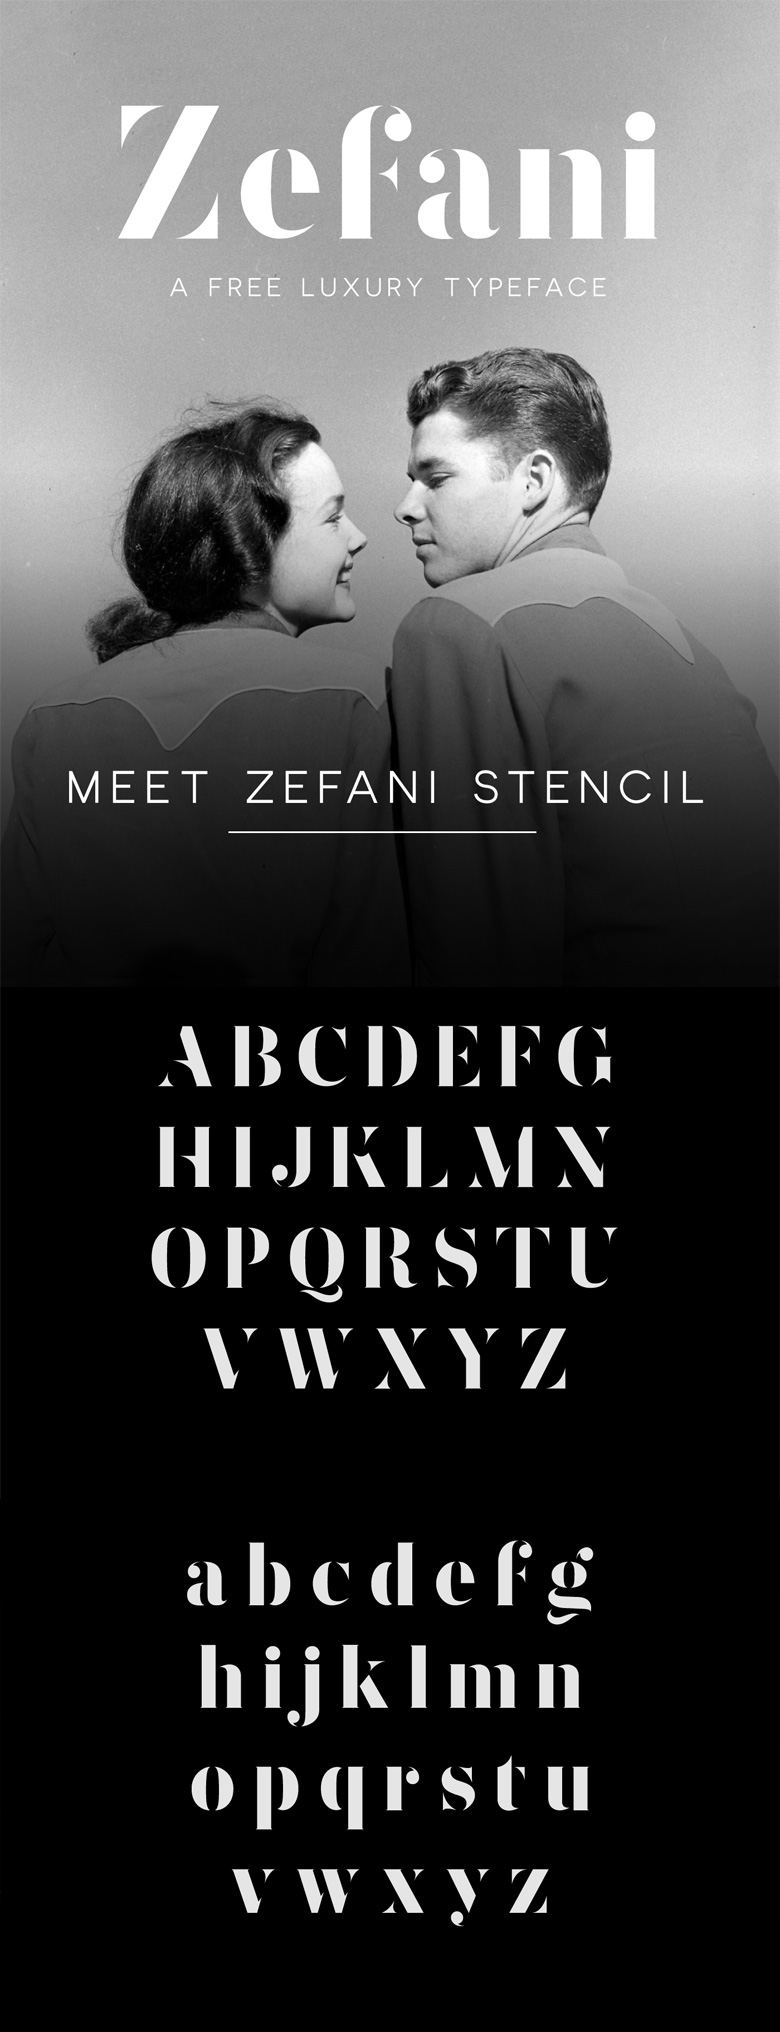 Beautiful free fonts for designers - Zefani